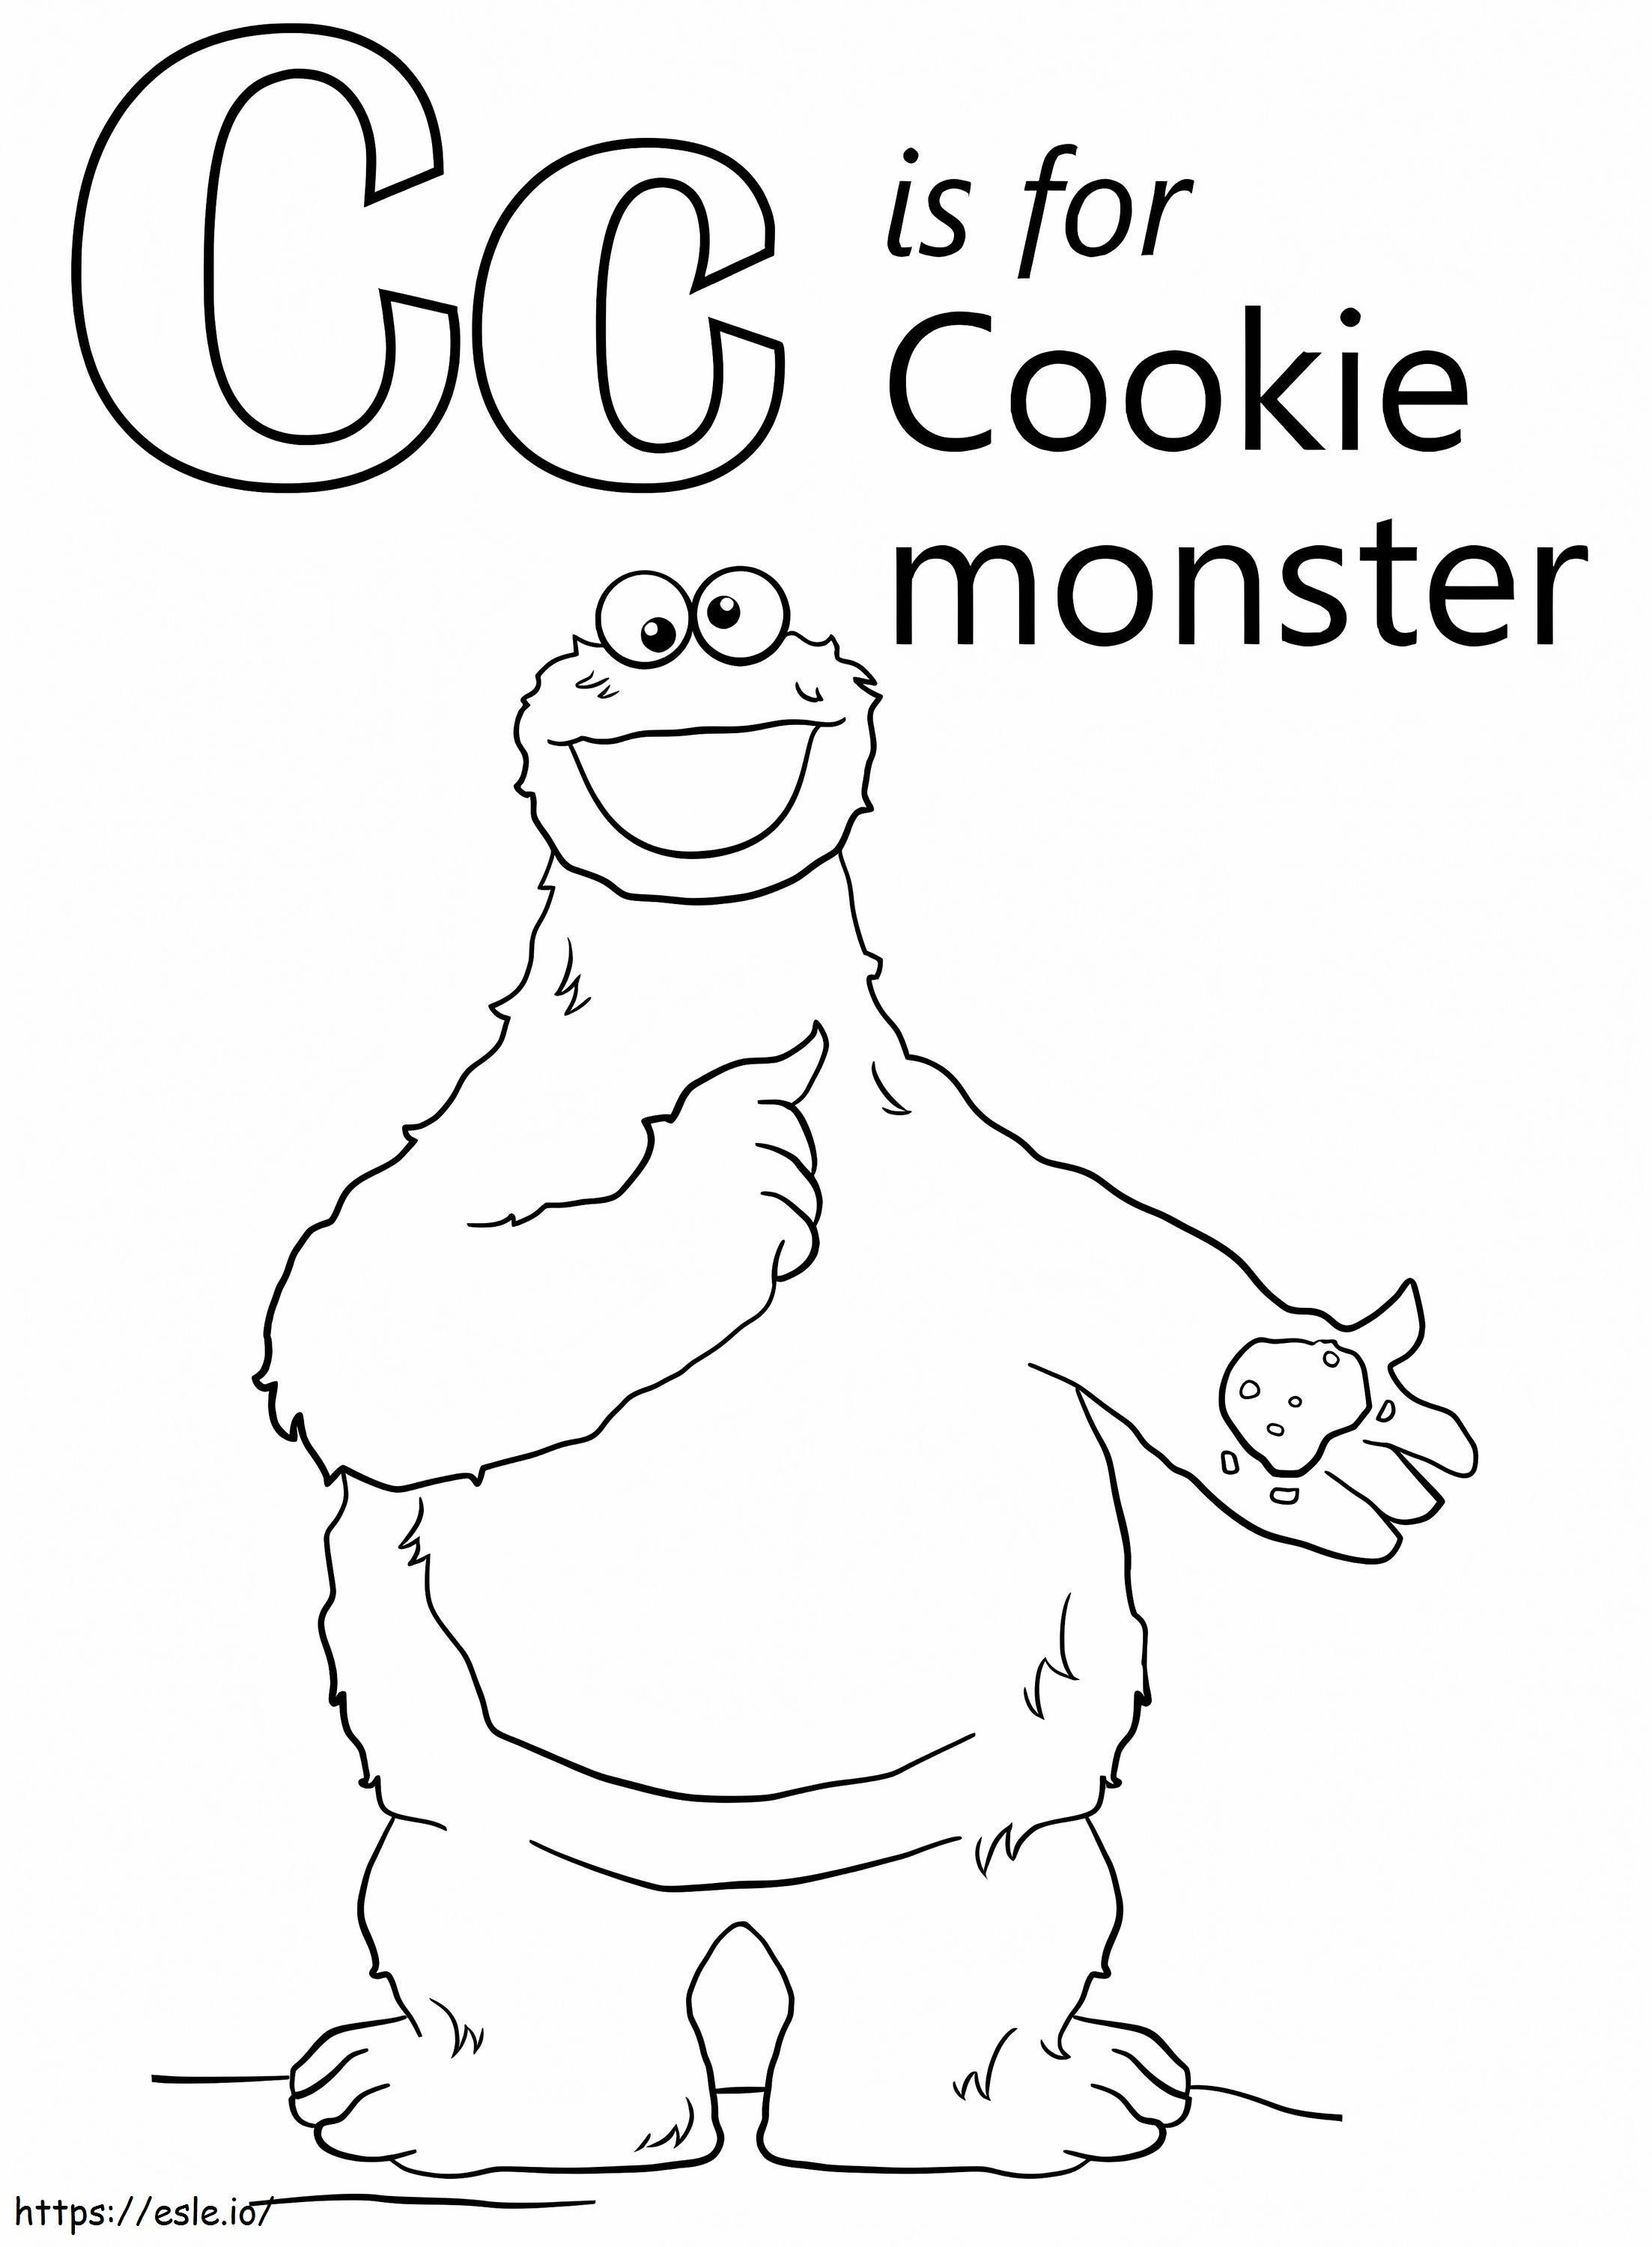 Cookie Monstro Letra C para colorir